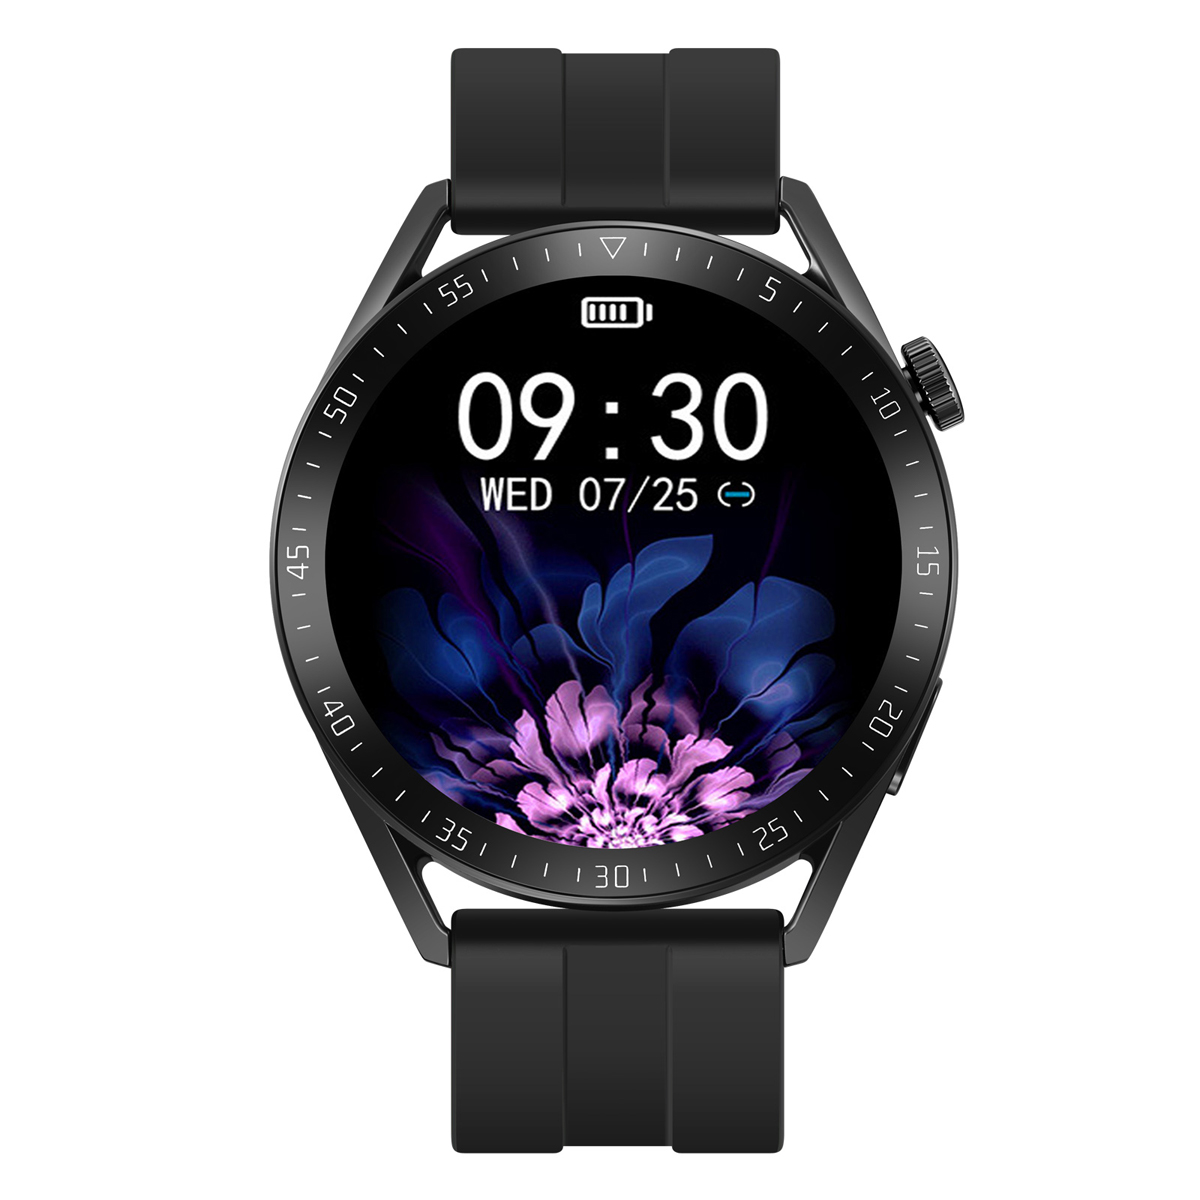 SKMEI smart watch S238